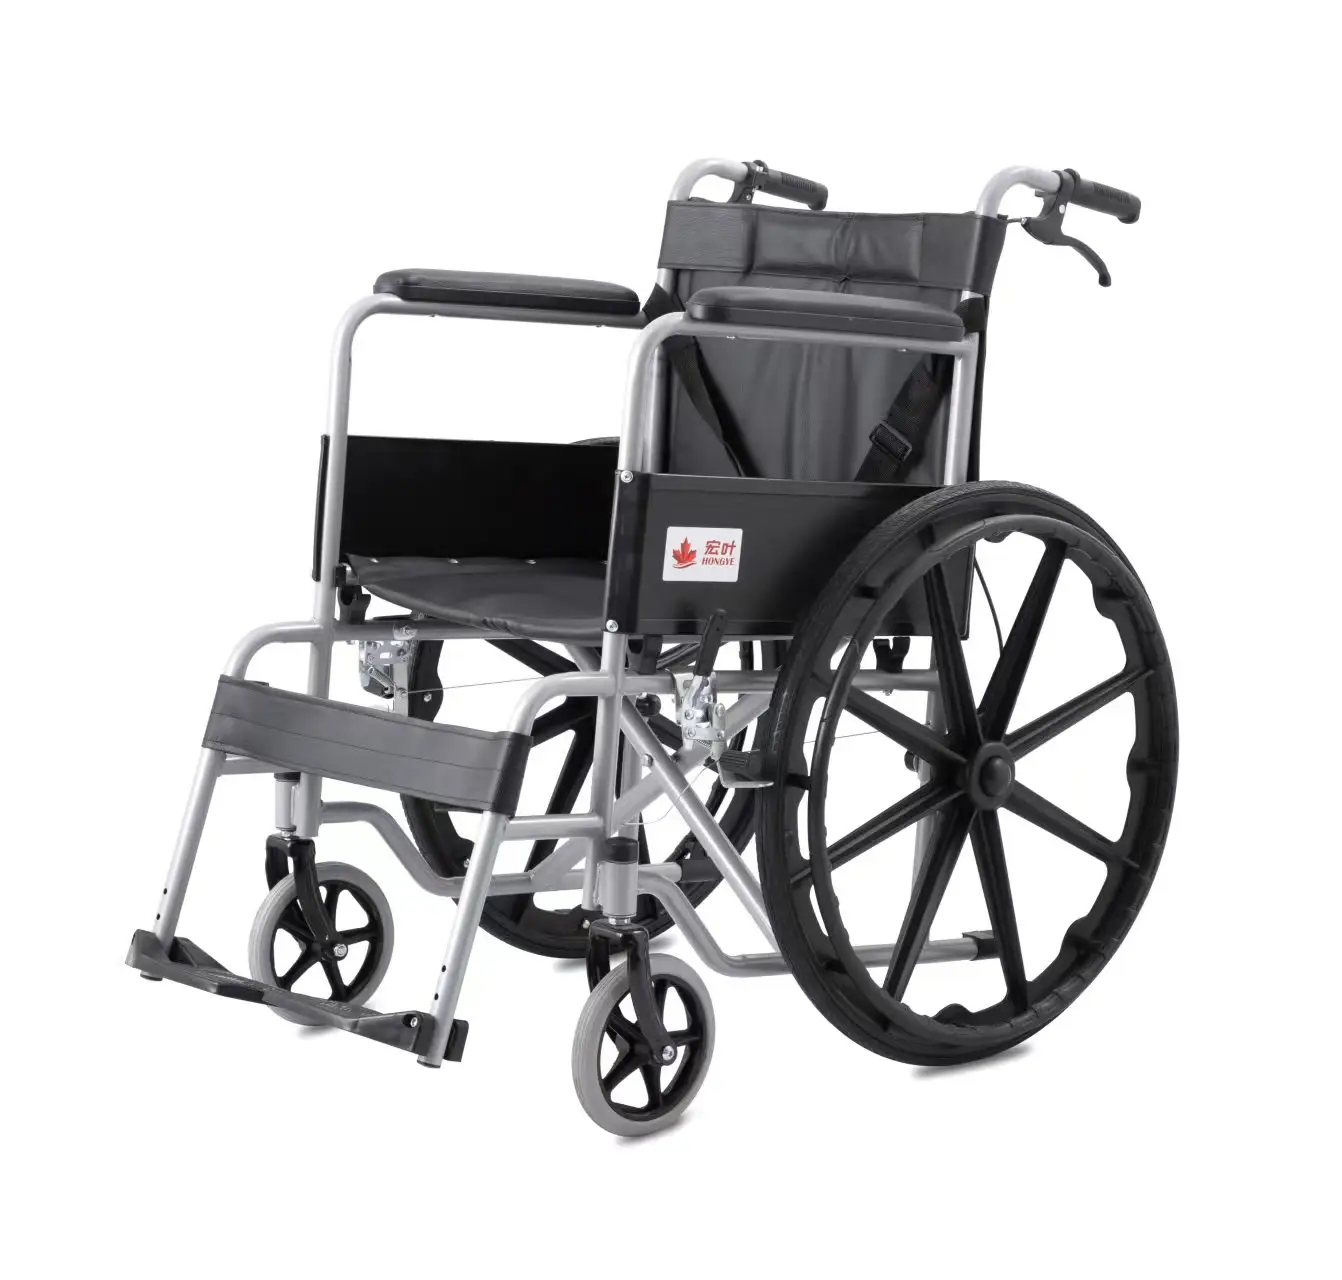 Silla de ruedas con estructura de acero al carbono empujada a mano para personas discapacitadas, andador en casa, cojín de asiento suave